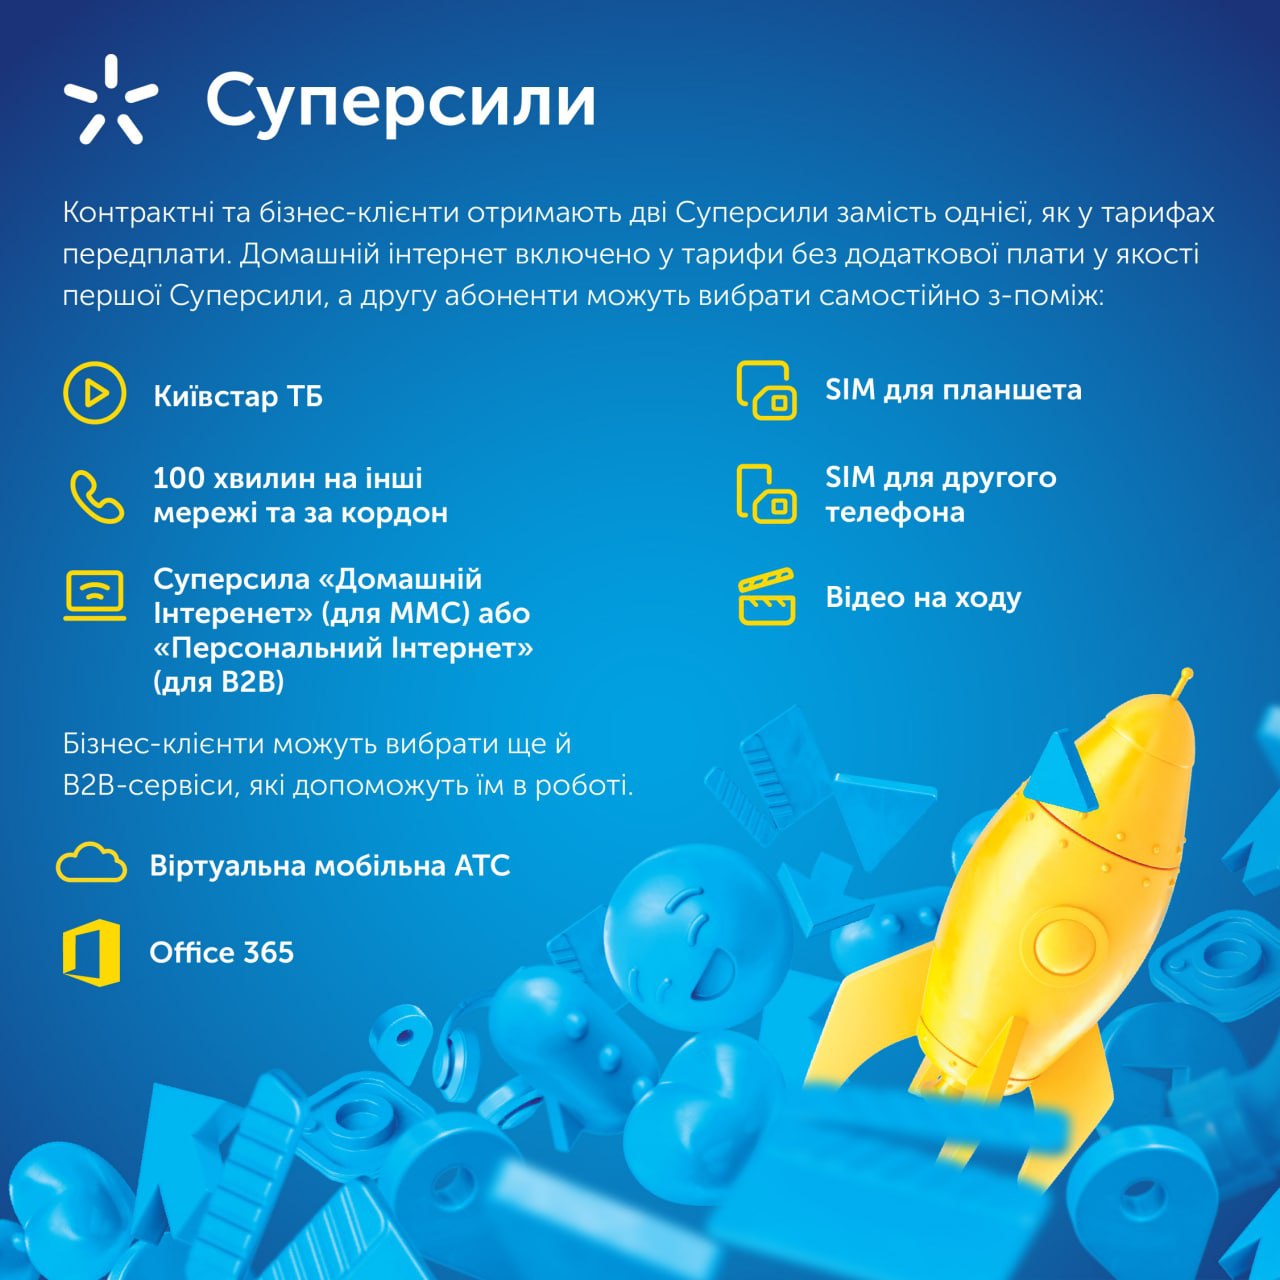 Київстар презентує нові тарифи для контрактних та бізнес-клієнтів